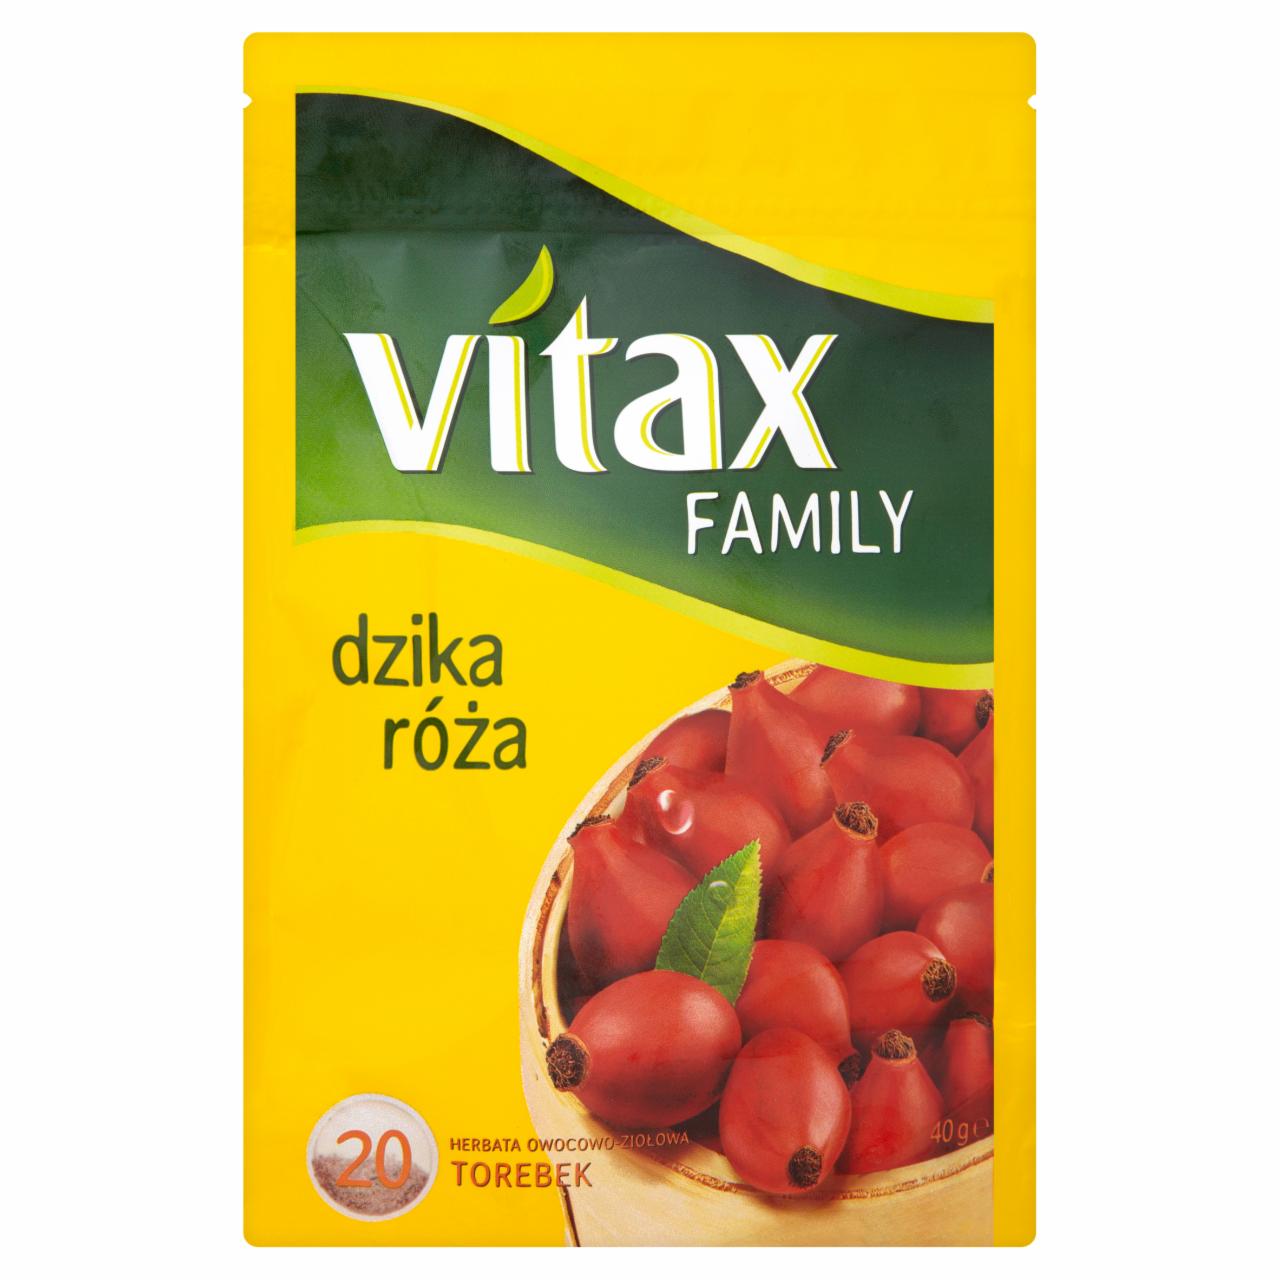 Zdjęcia - Vitax Family dzika róża Herbata owocowo-ziołowa 40 g (20 torebek)